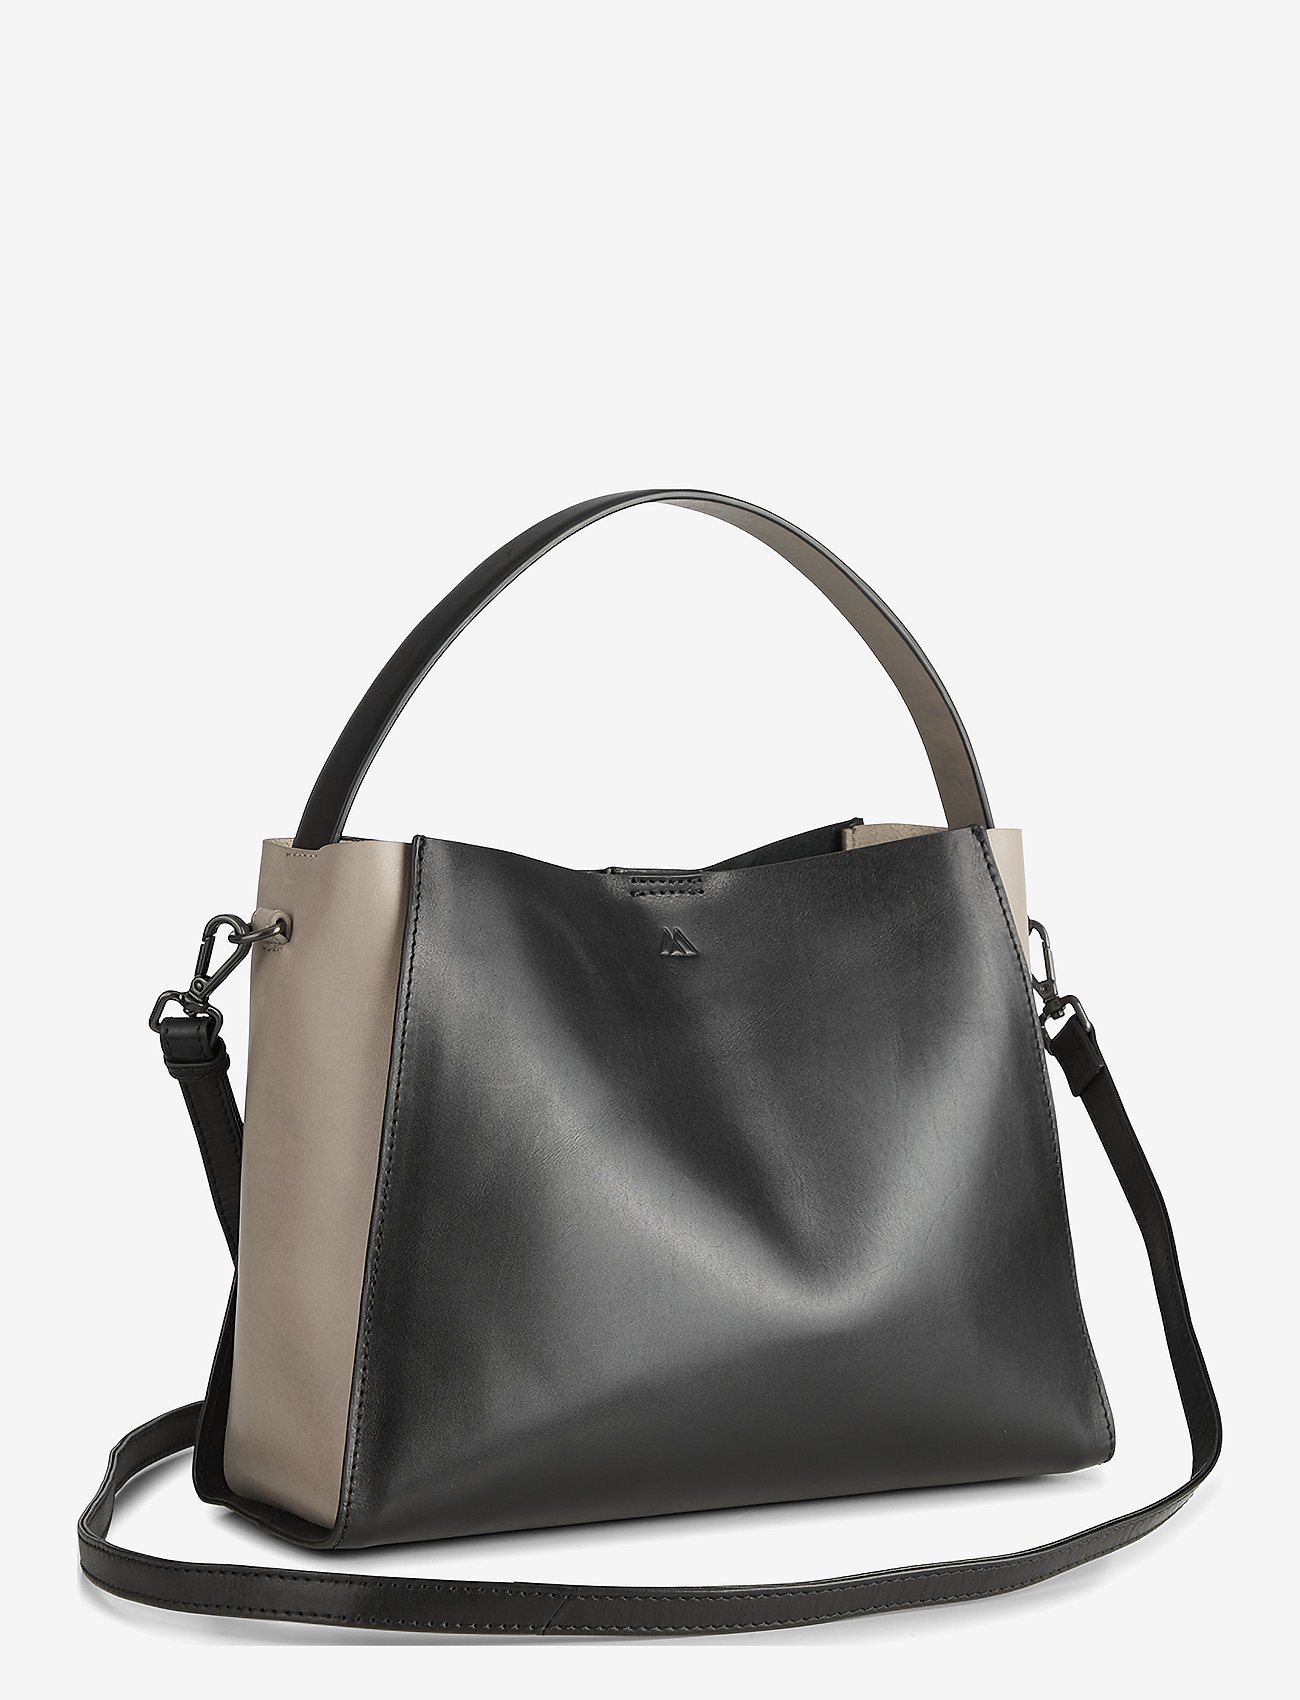 Markberg - RayneMBG Bag, Antique - odzież imprezowa w cenach outletowych - black w/sand - 1